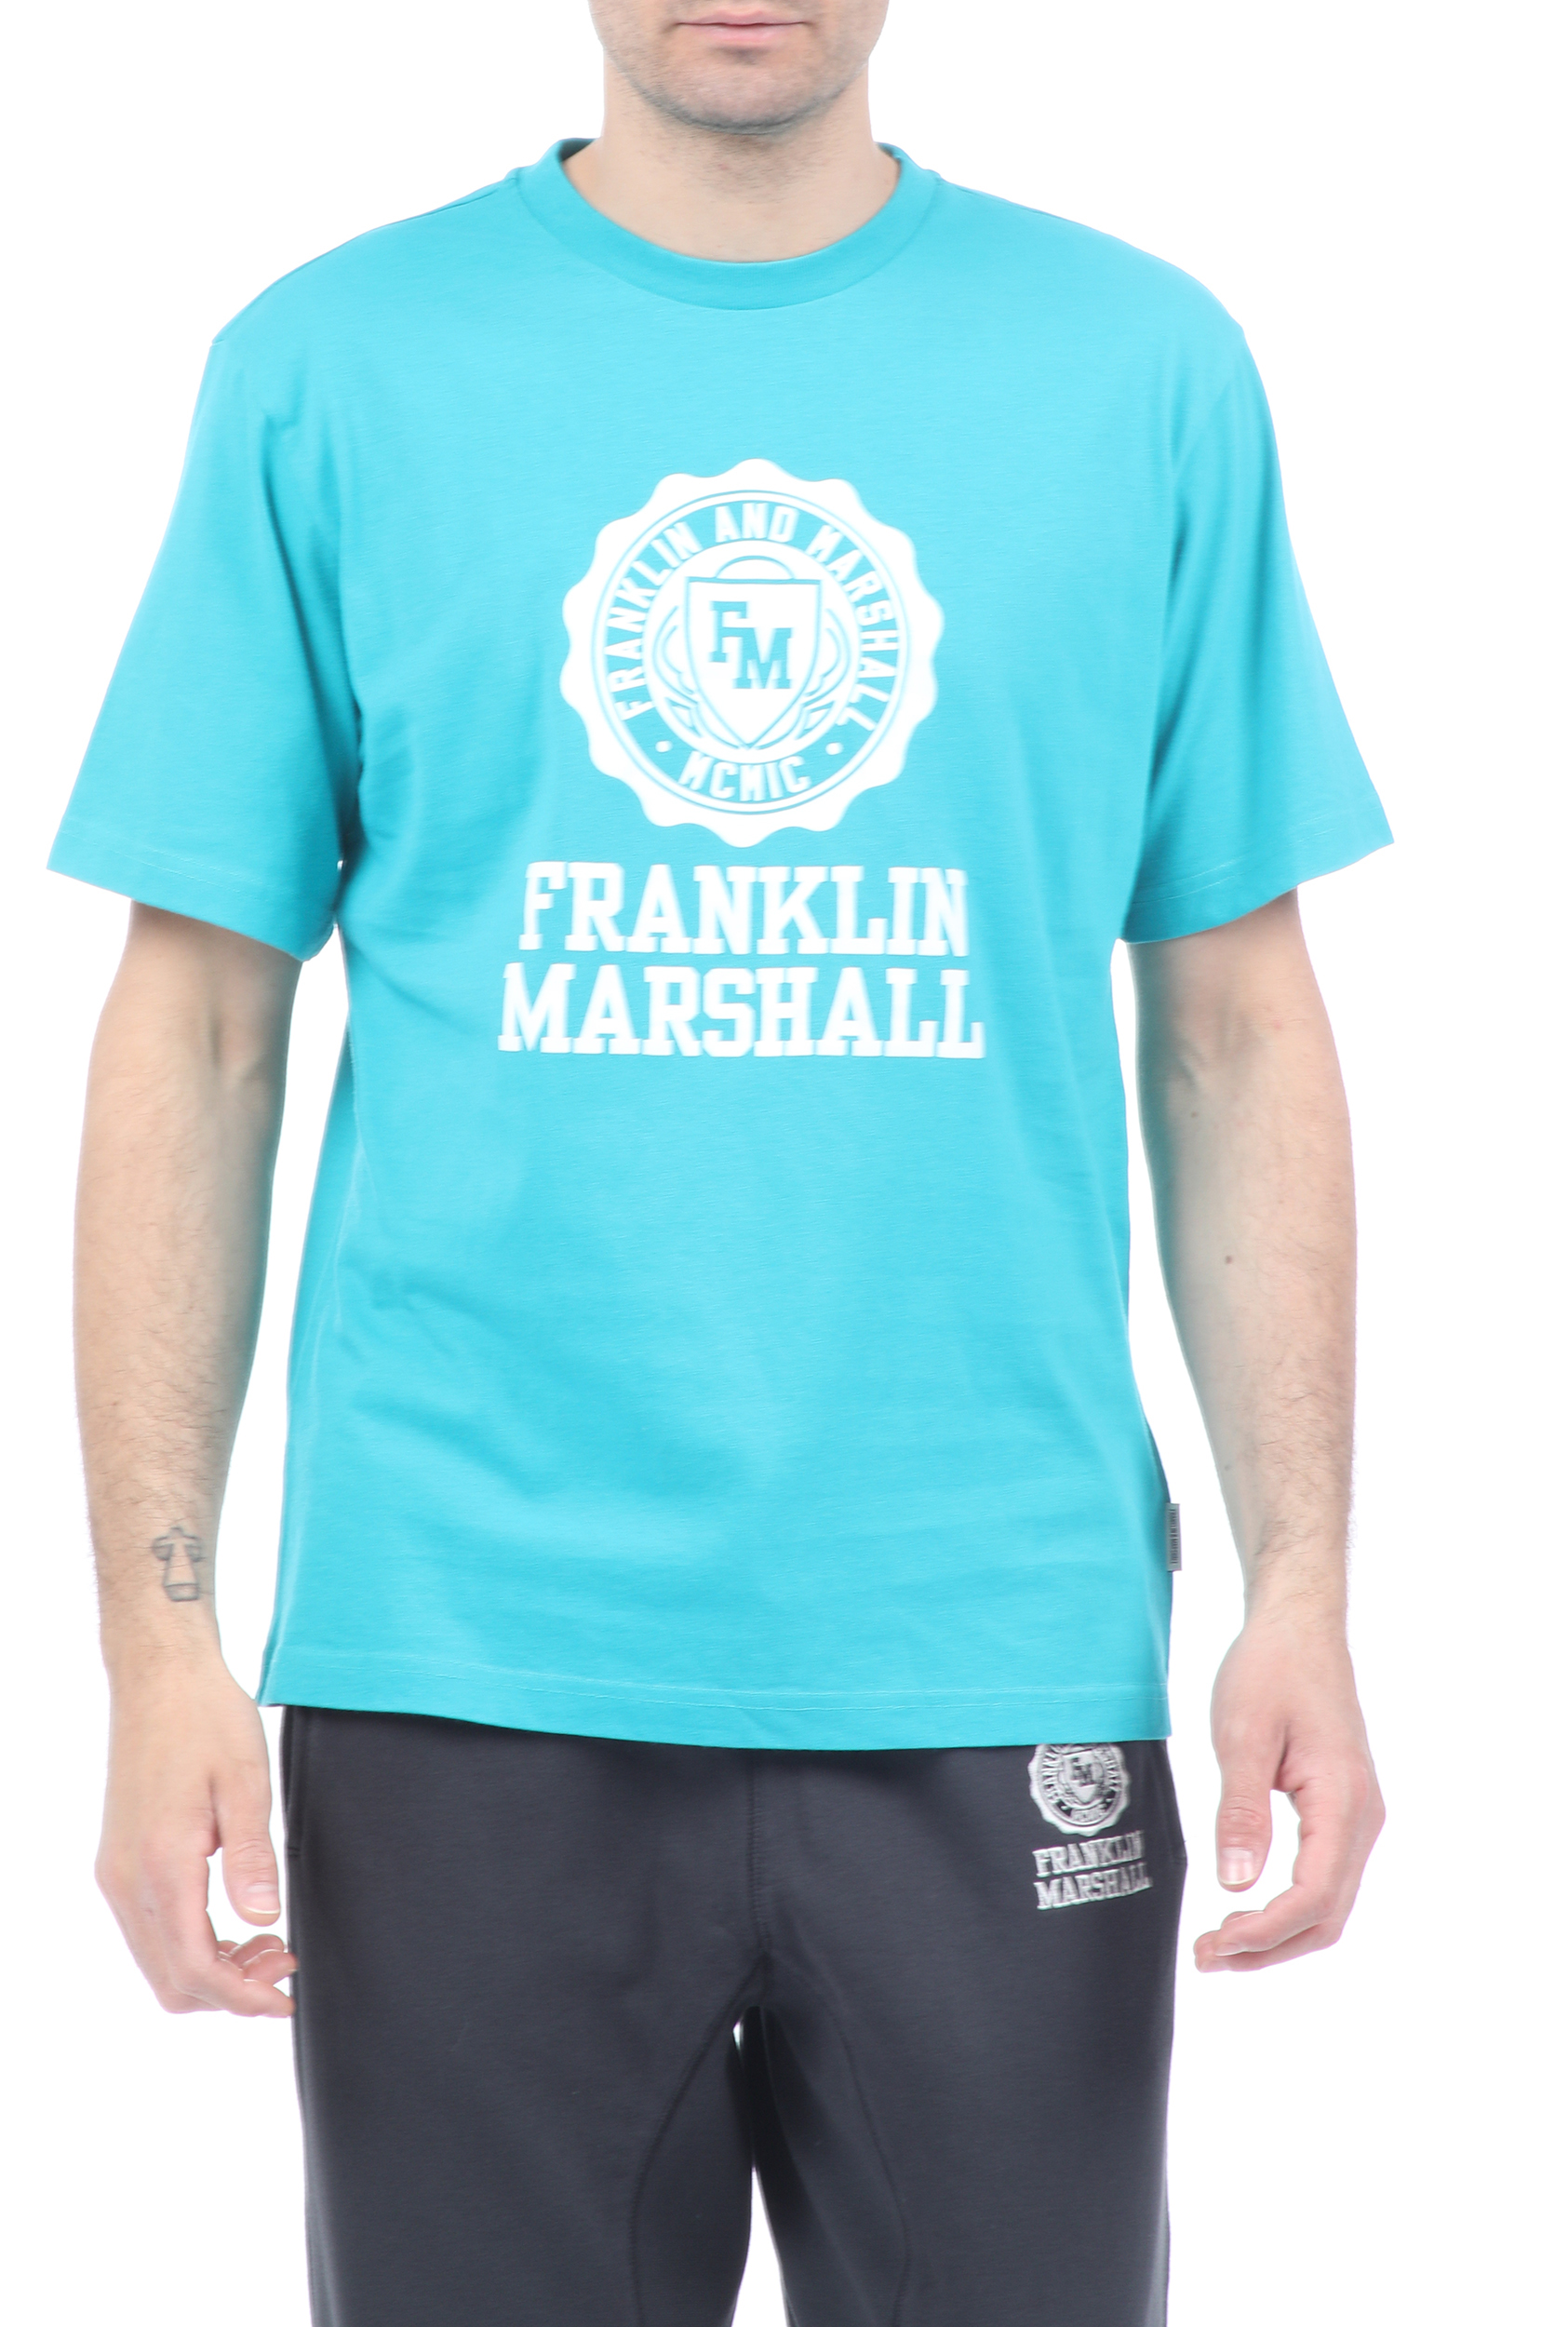 Ανδρικά/Ρούχα/Μπλούζες/Κοντομάνικες FRANKLIN & MARSHALL - Ανδρικό t-shirt FRANKLIN & MARSHALL μπλε